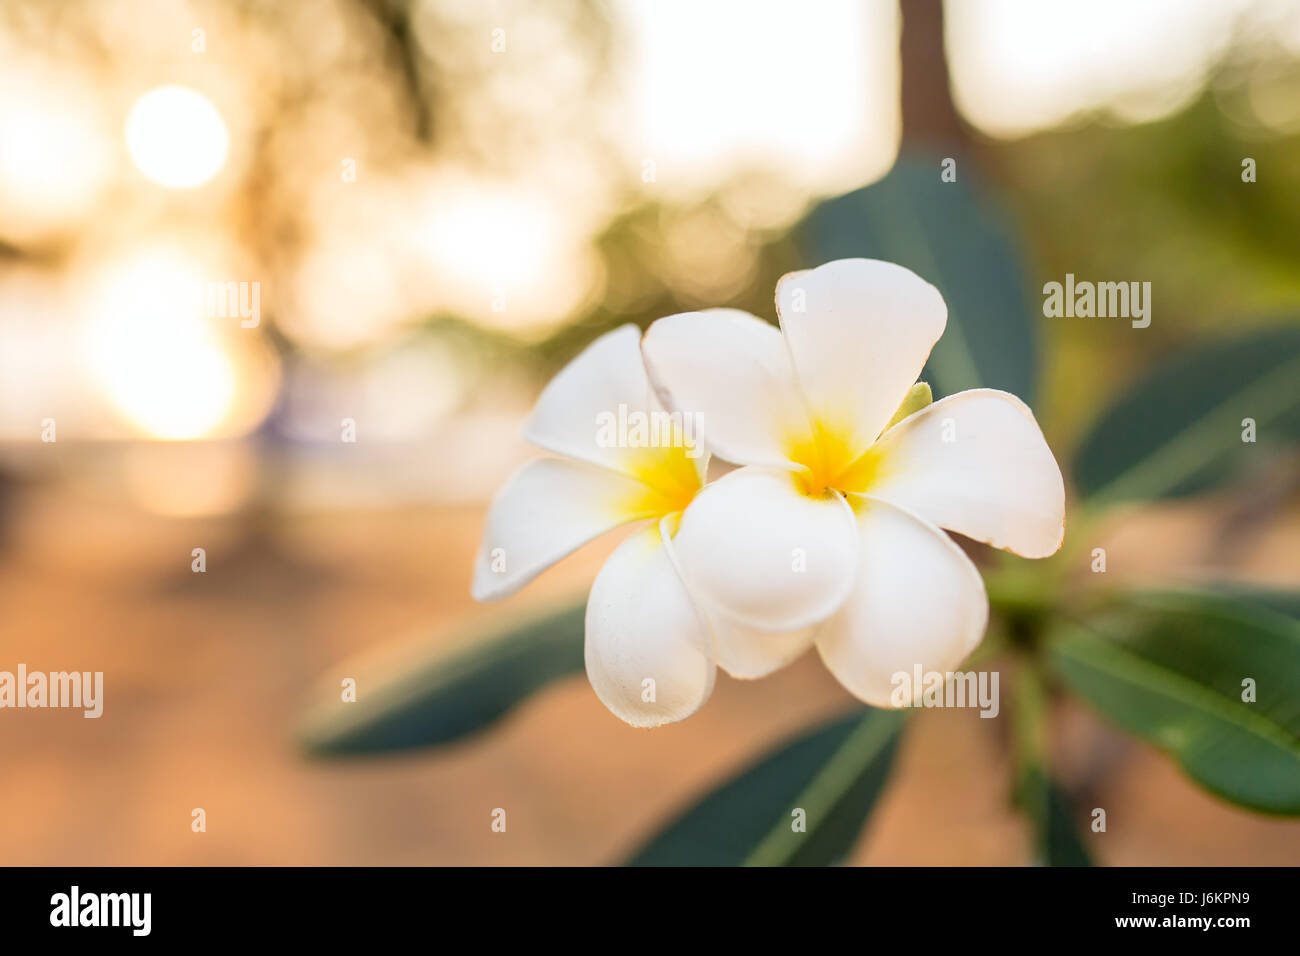 Beautiful white and yellow frangipani flower close-up Stock Photo